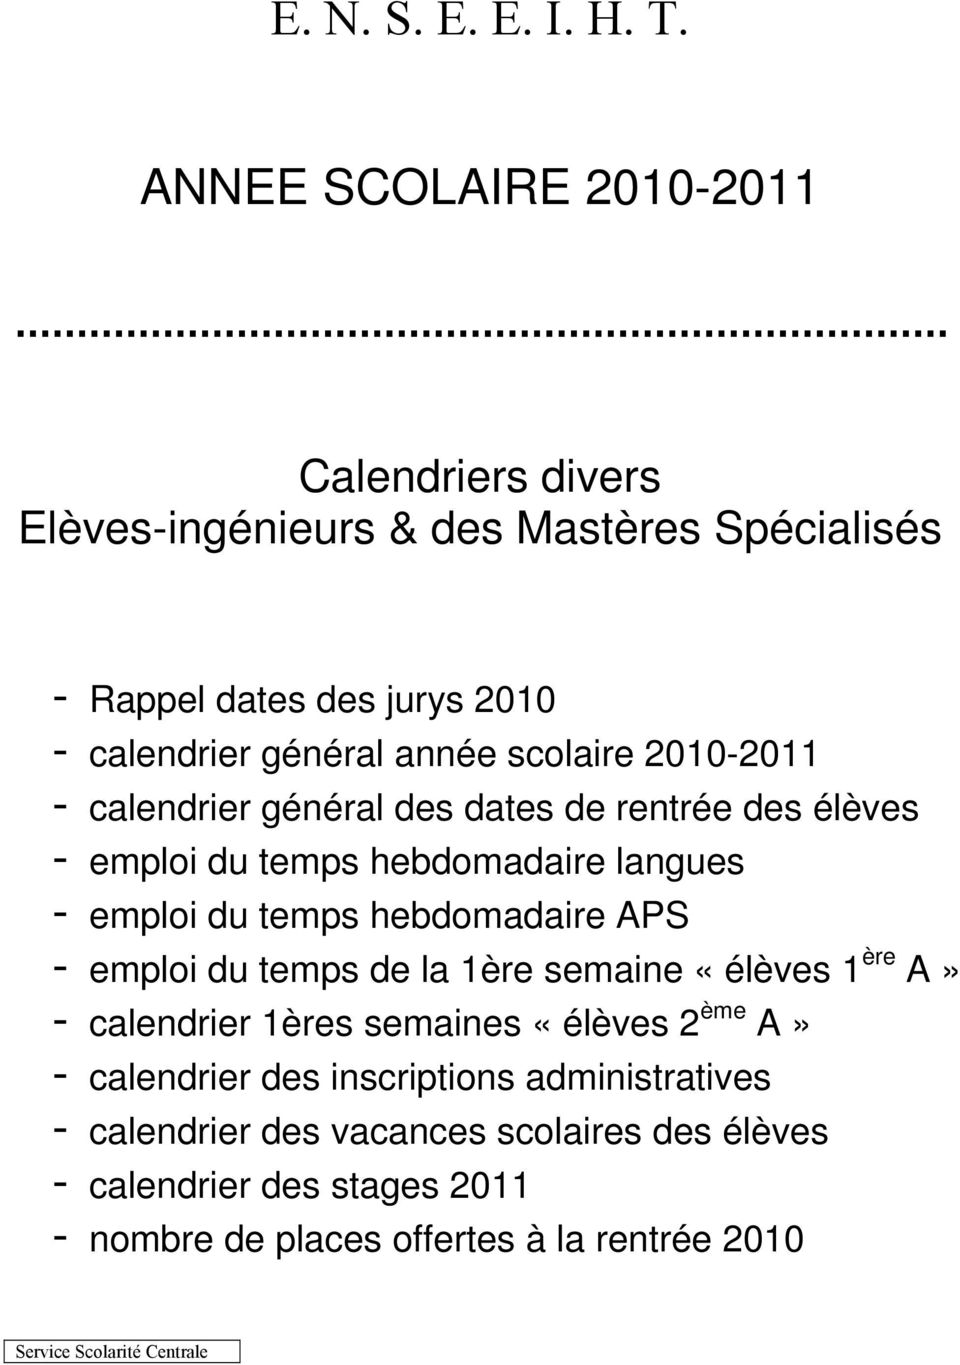 scolaire 2010-2011 - calendrier général des dates de rentrée des élèves - emploi du temps hebdomadaire langues - emploi du temps hebdomadaire APS -